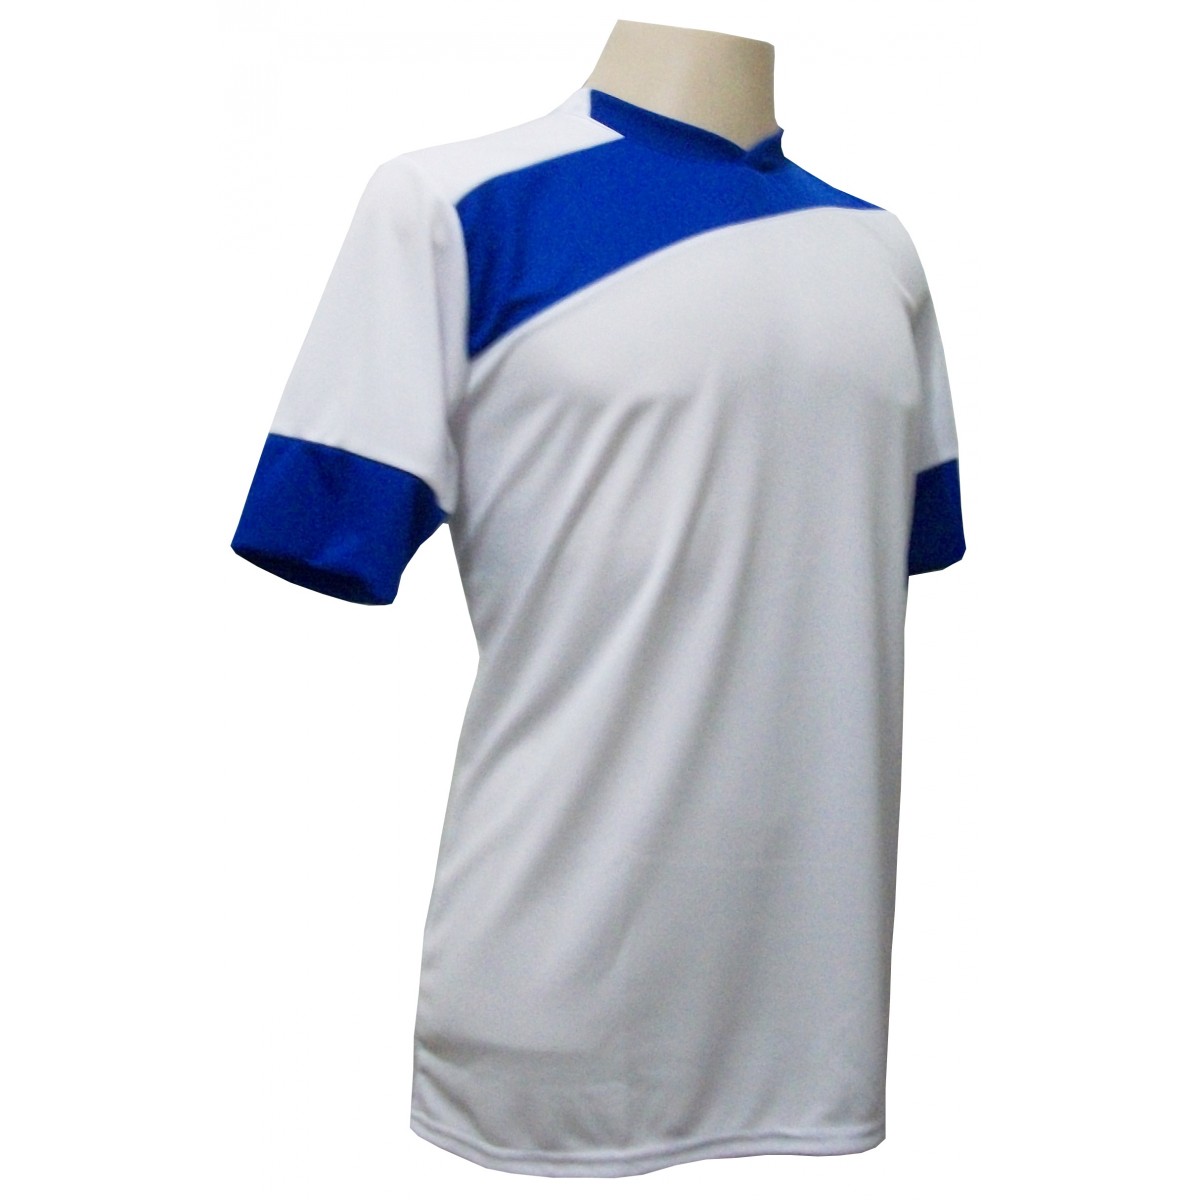 Uniforme Esportivo Completo modelo Sporting 14+1 (14 camisas Branco/Royal + 14 calções Madrid Branco + 14 pares de meiões Royal + 1 conjunto de goleiro) + Brindes